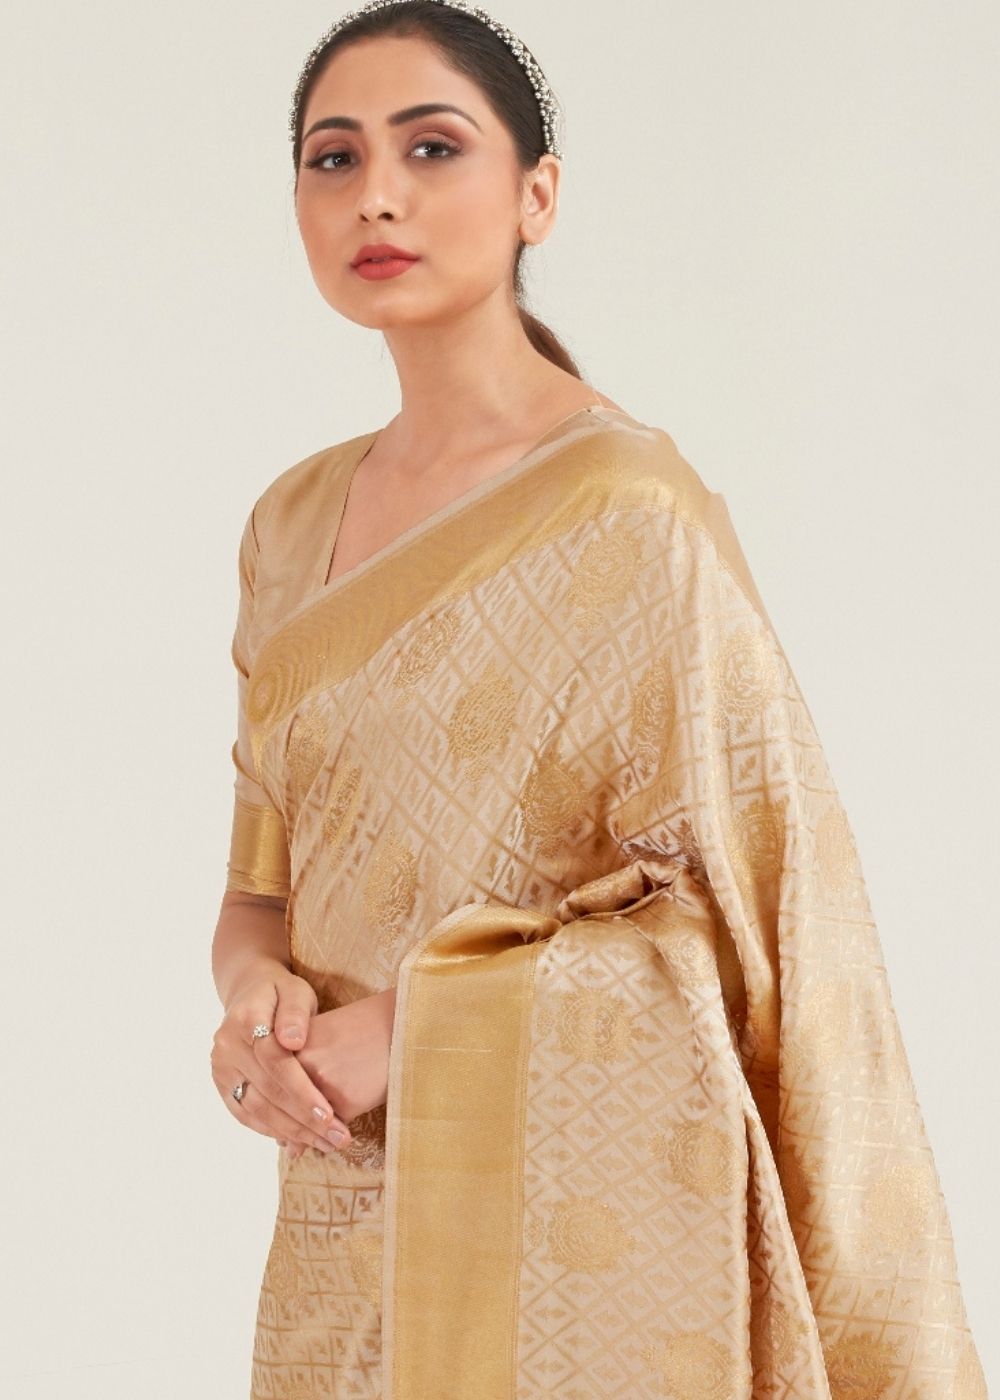 Beige Golden Zari Butta Woven Banasari Silk Saree